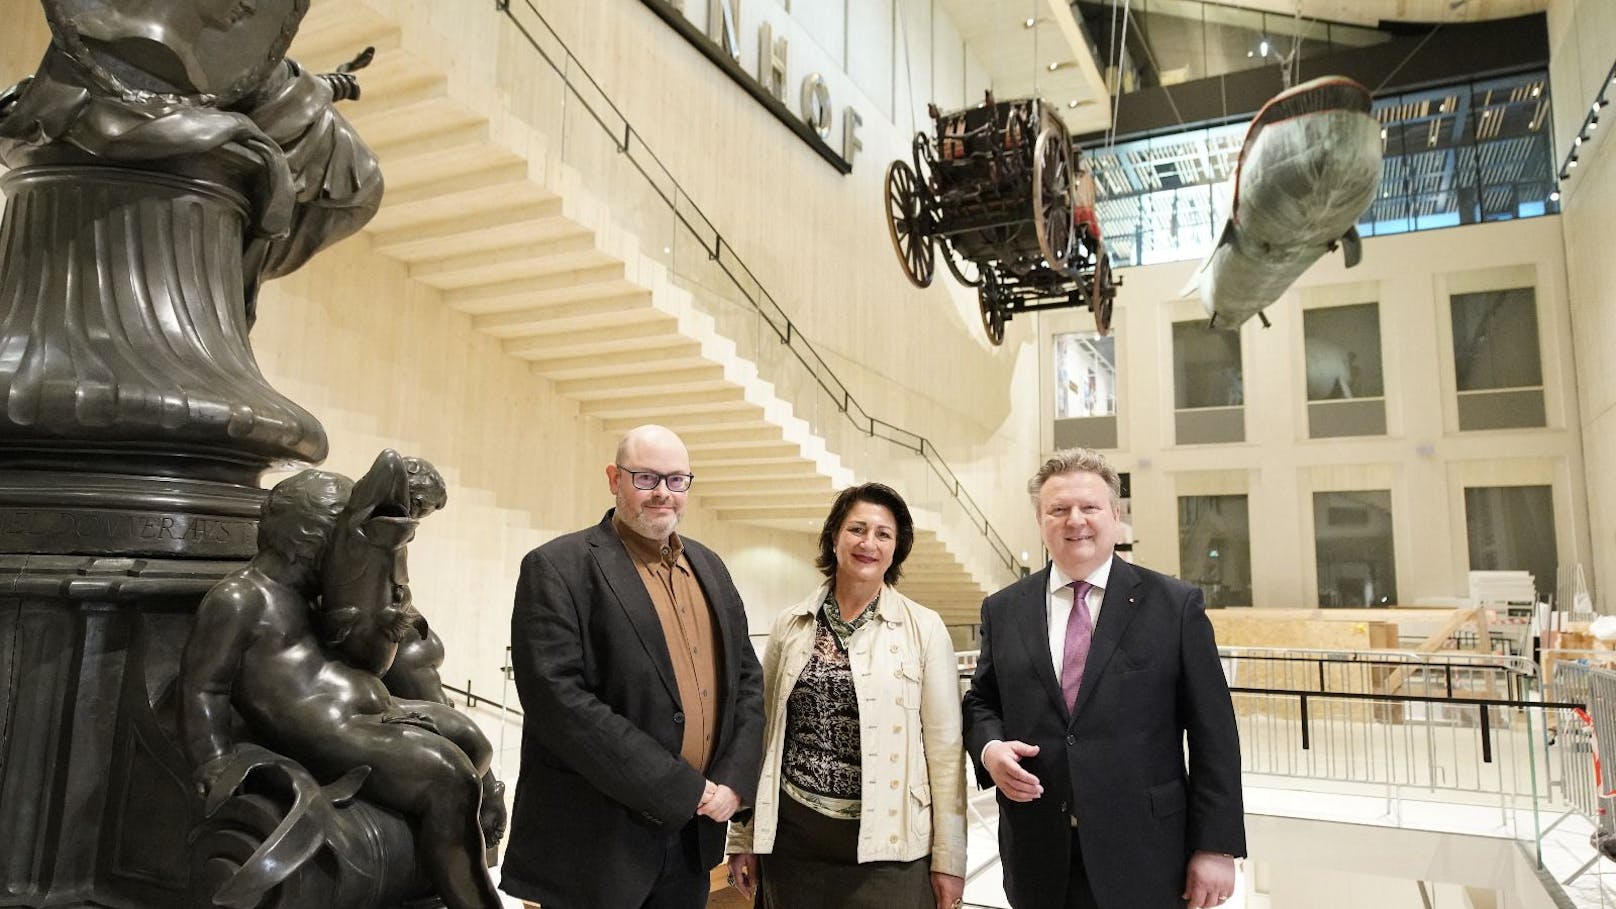 Gratis und ohne Warteschlange ins neue Wien Museum